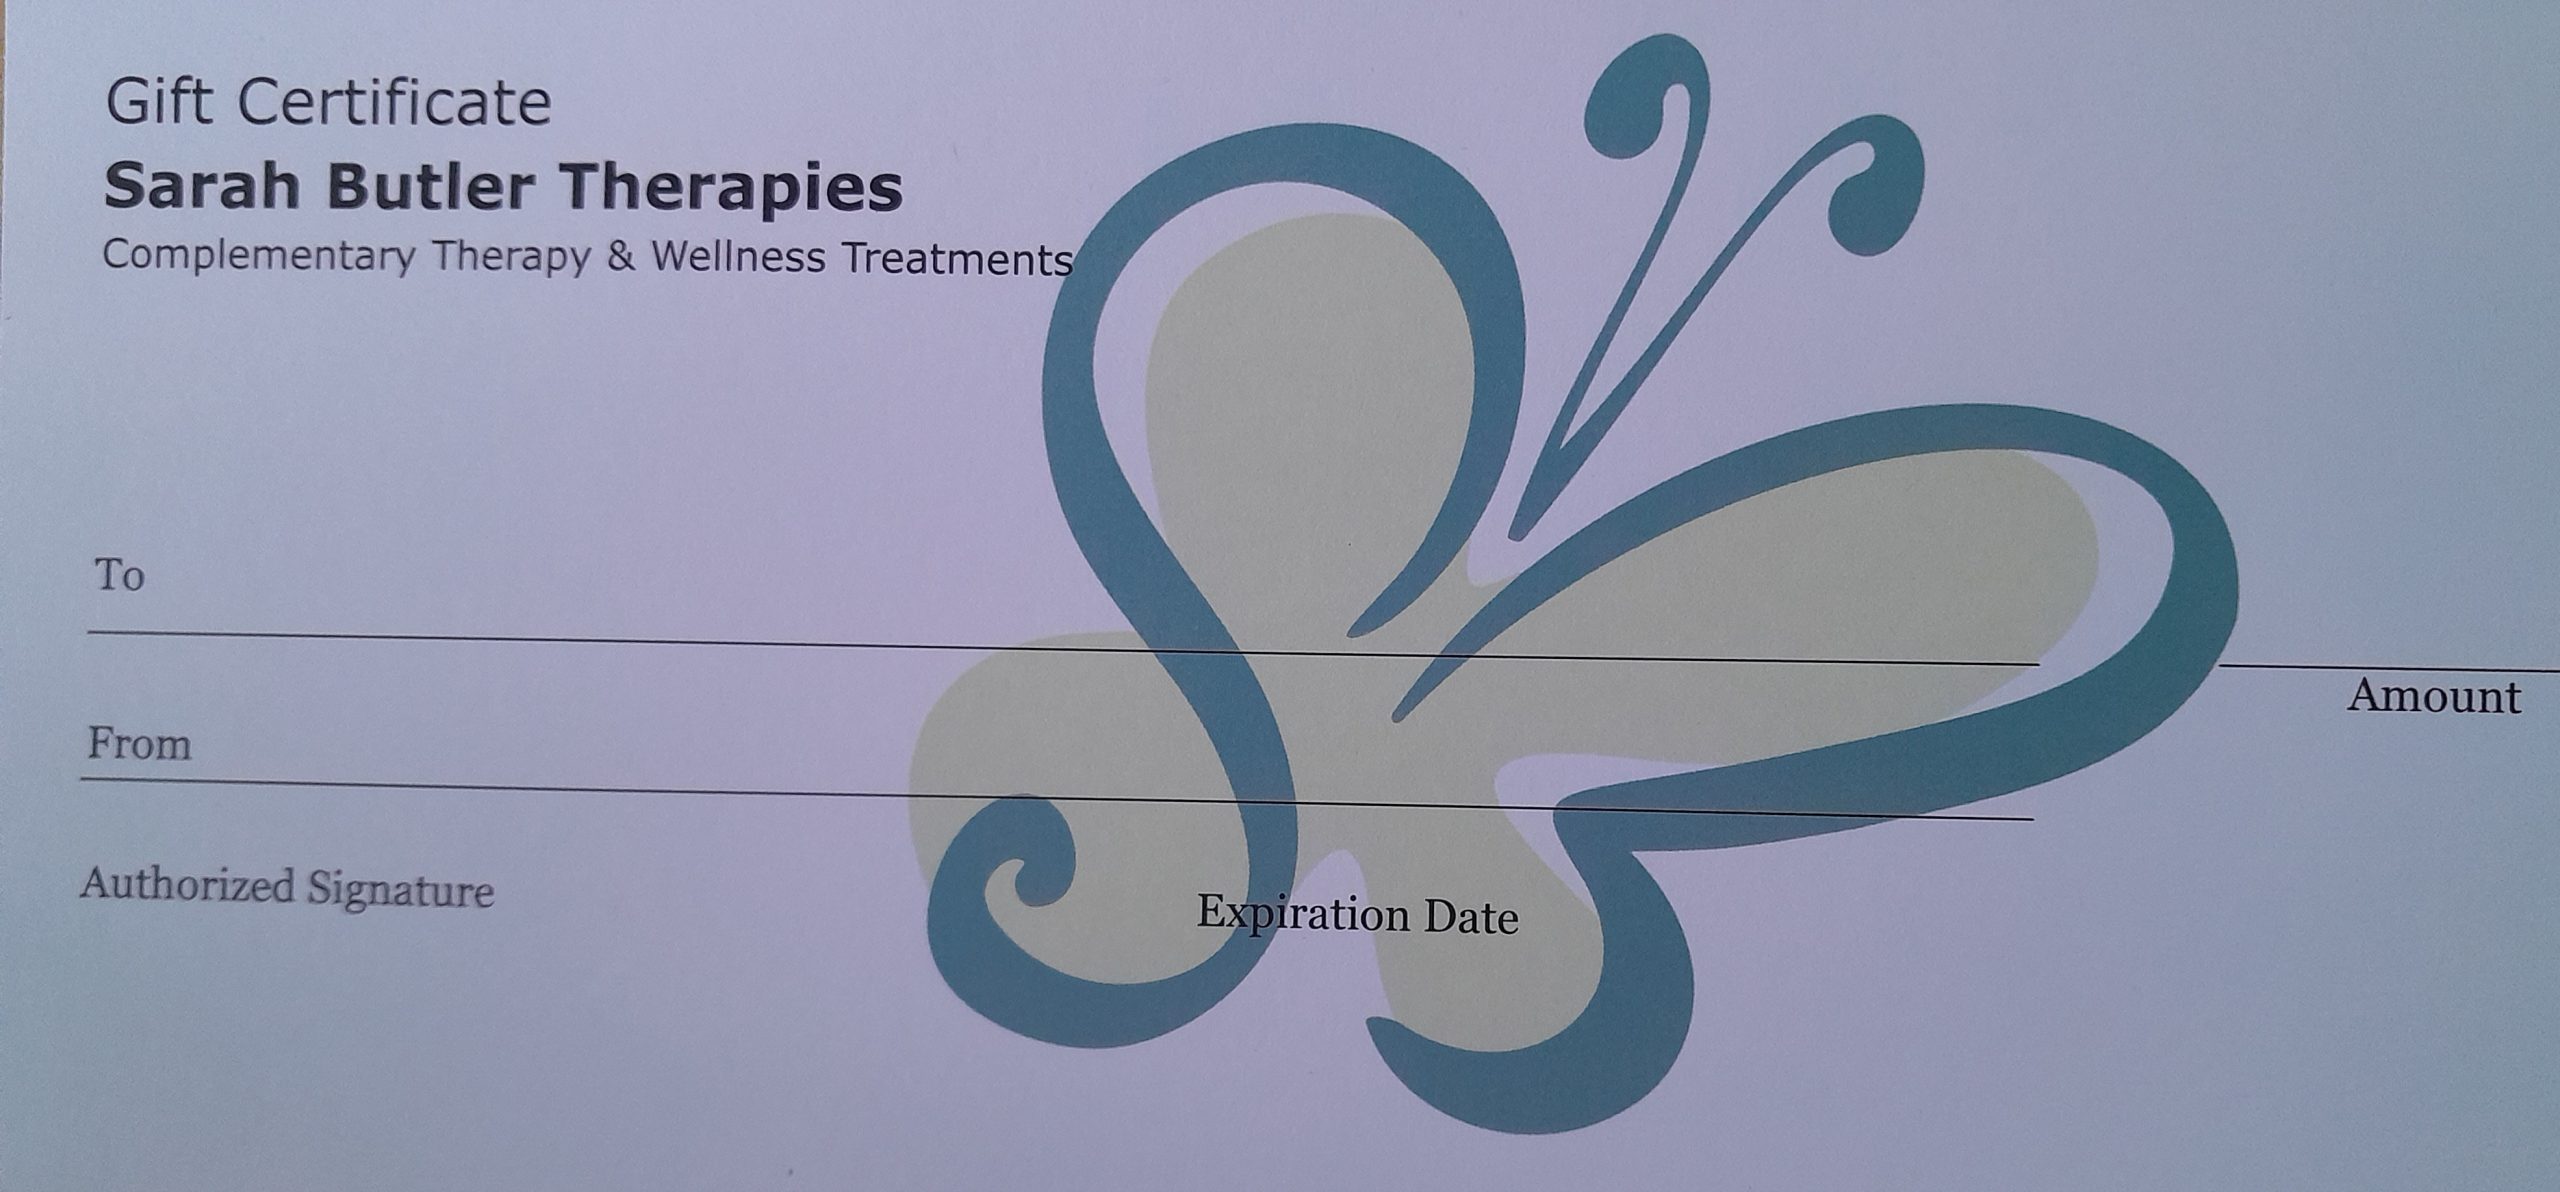 Sarah Butler Therapies Gift Certificate